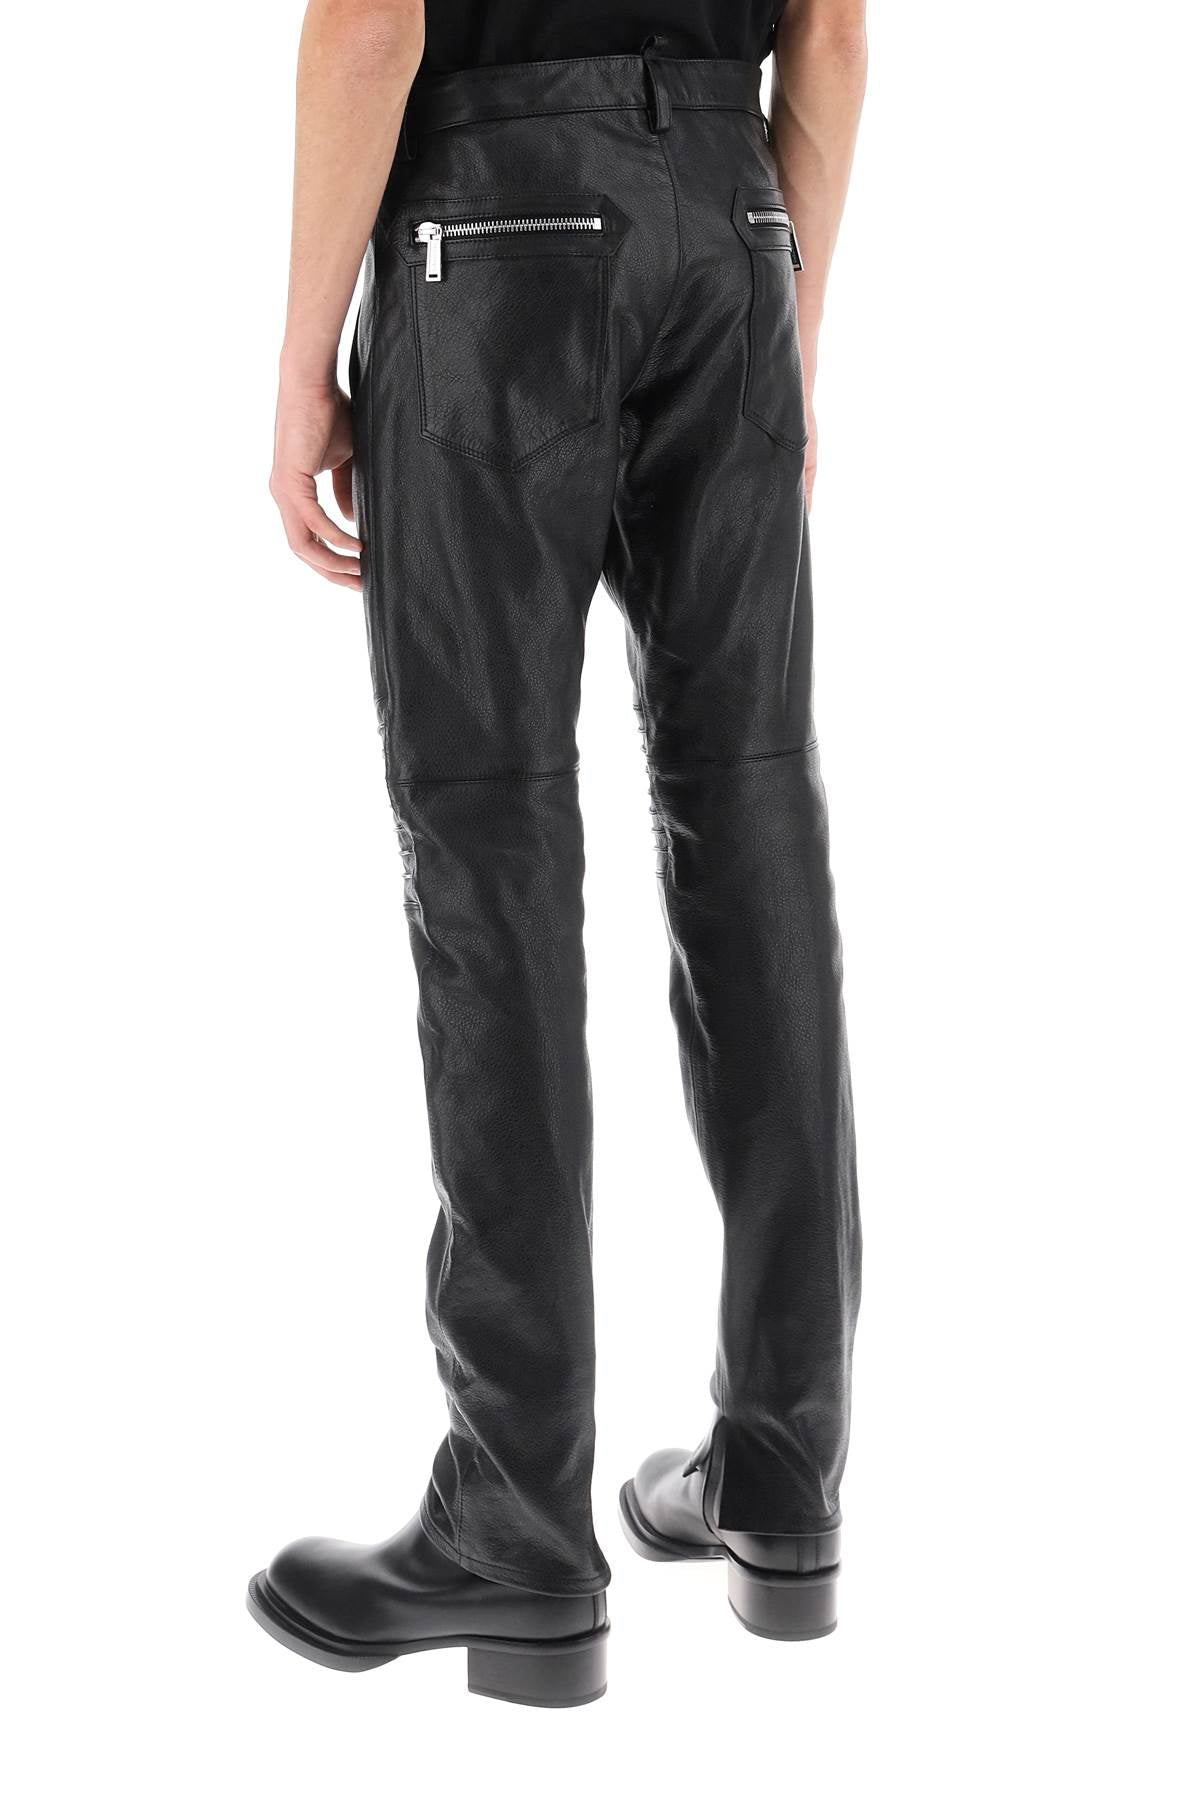 Shop Dsquared2 Biker-inspired Black Leather Pants For Men